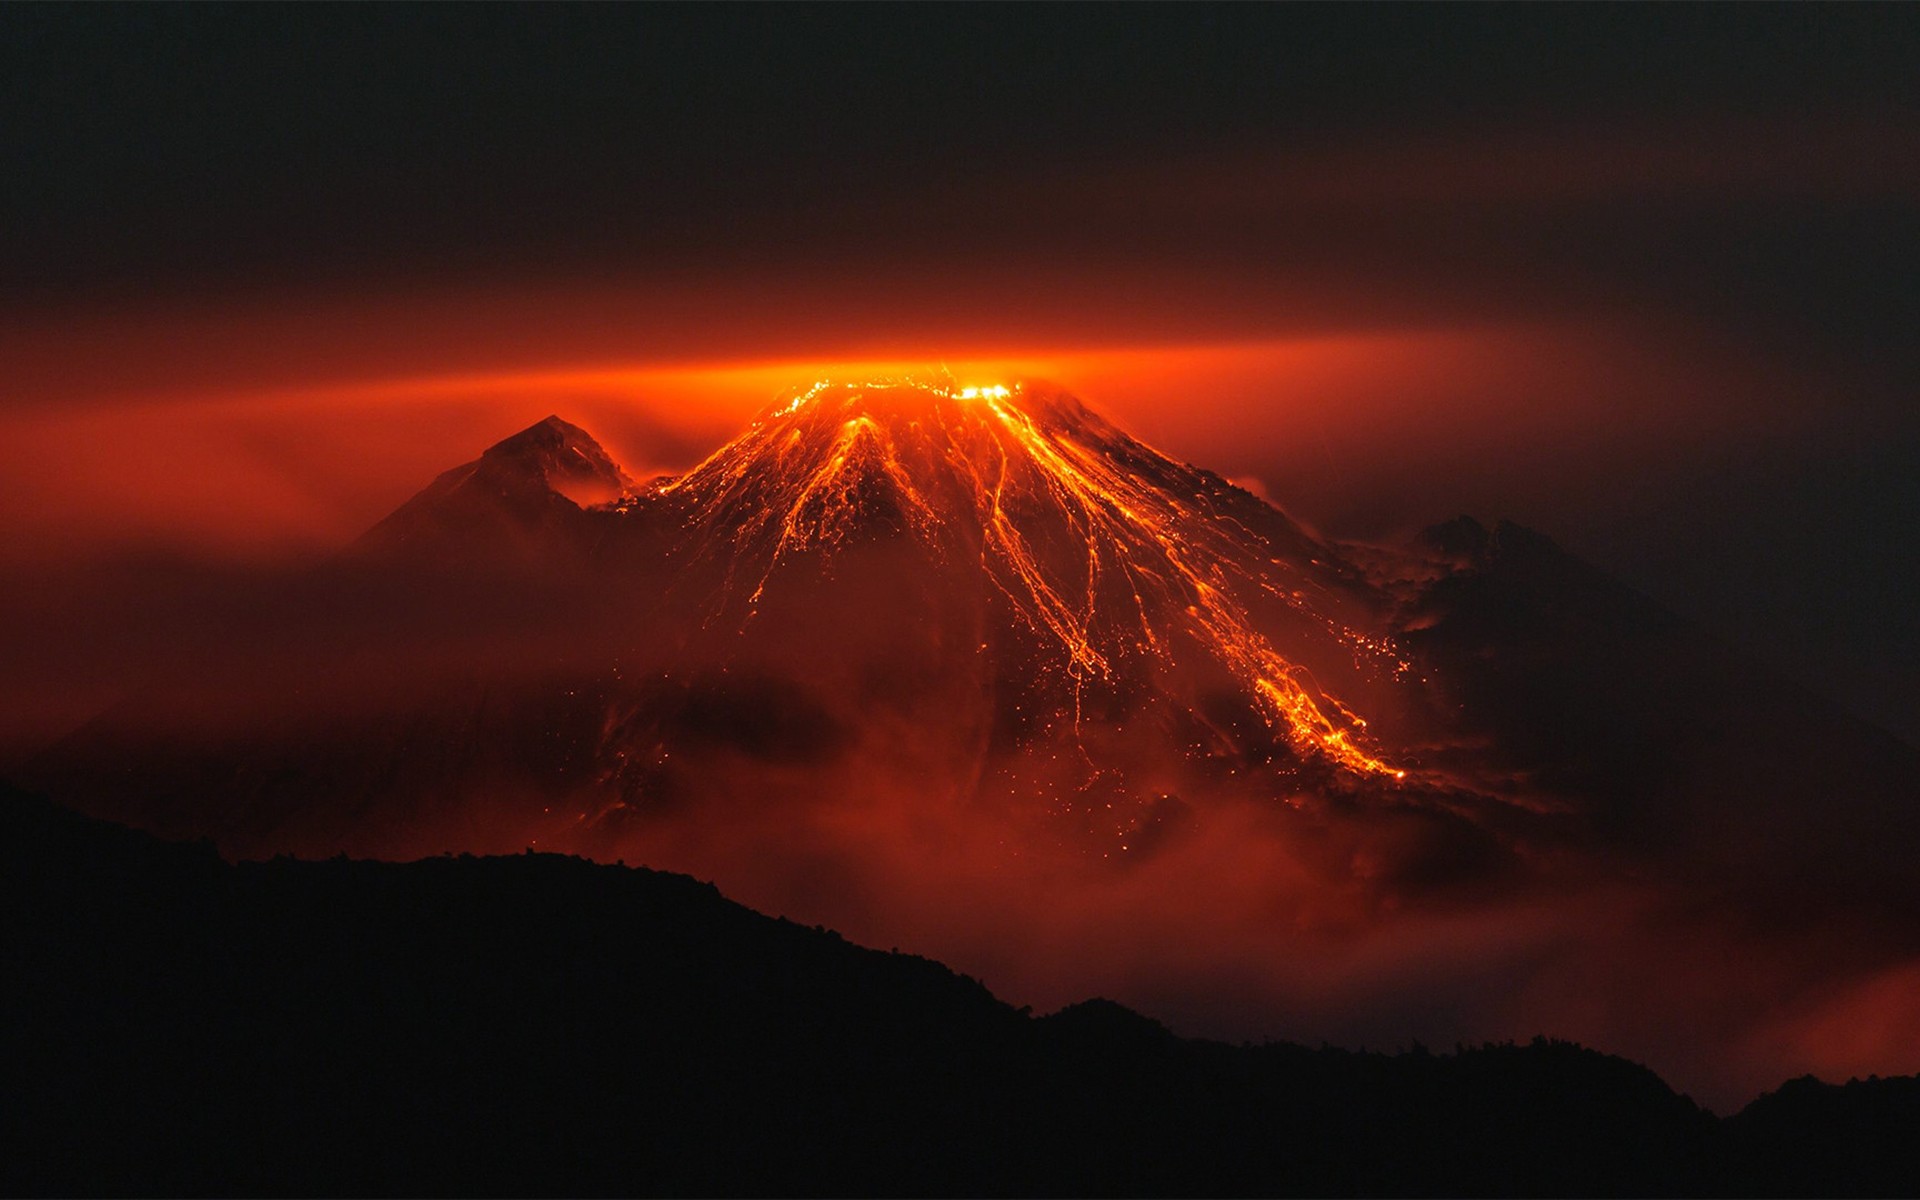 Фото пейзаж, горы, ночь, природа, красный, силуэт, восход солнца, вулкан, оранжевый, лава, сумрак, эквадор, извержение вулкана, рассвет, рельеф местности - бесплатные картинки на Fonwall